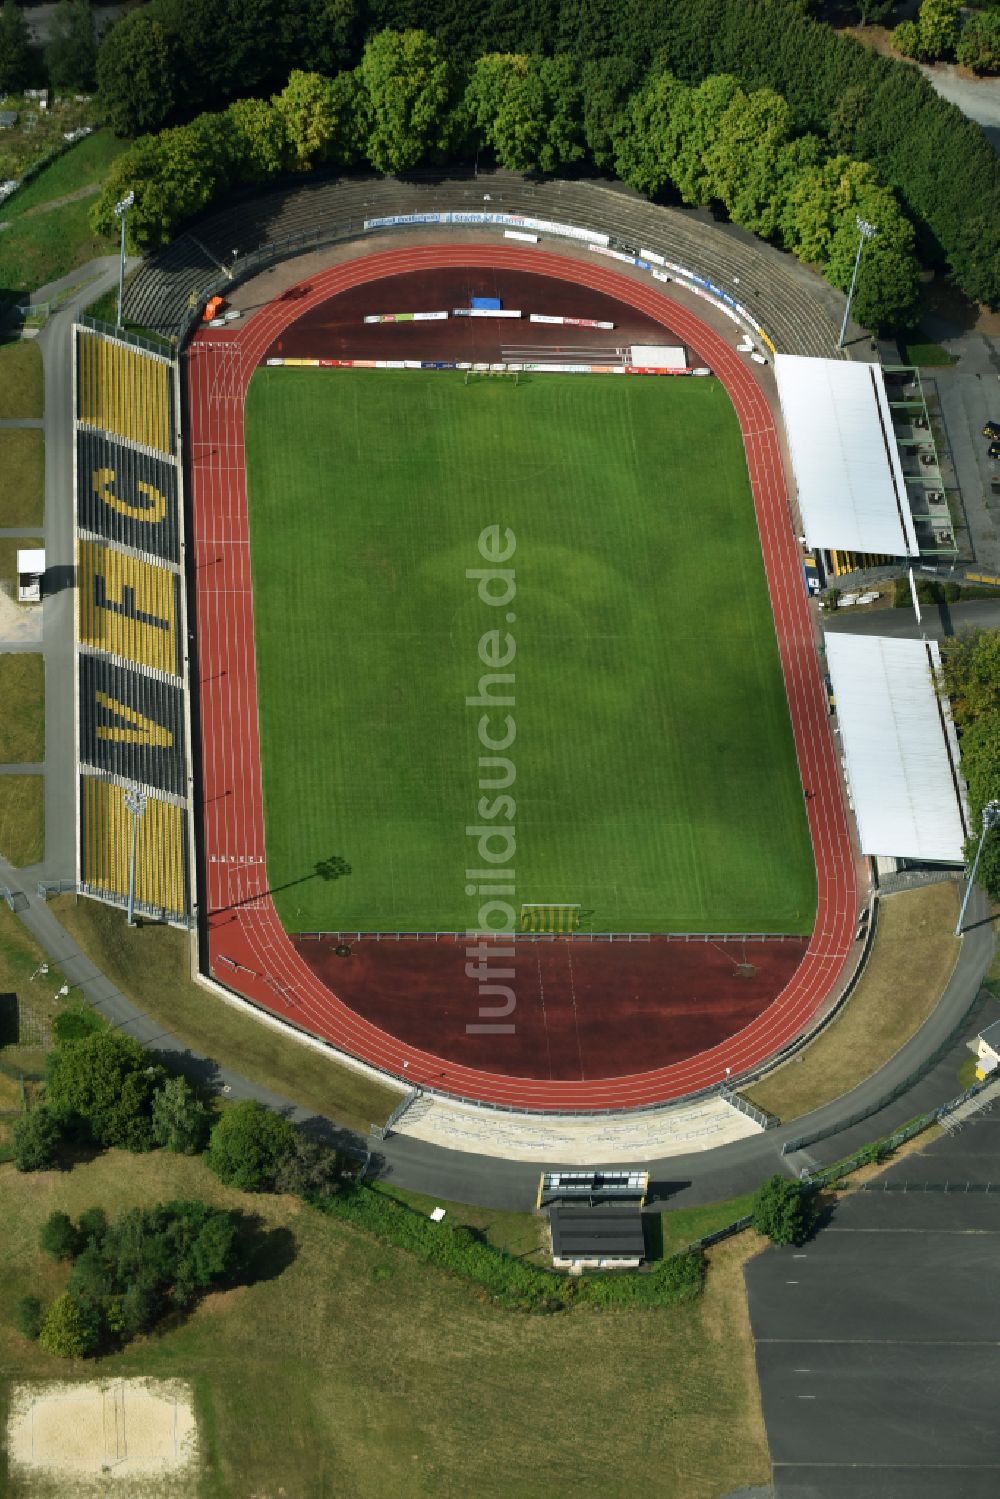 Luftbild Plauen - Fussballstadion des Vereins VFC Plauen in Plauen im Bundesland Sachsen, Deutschland